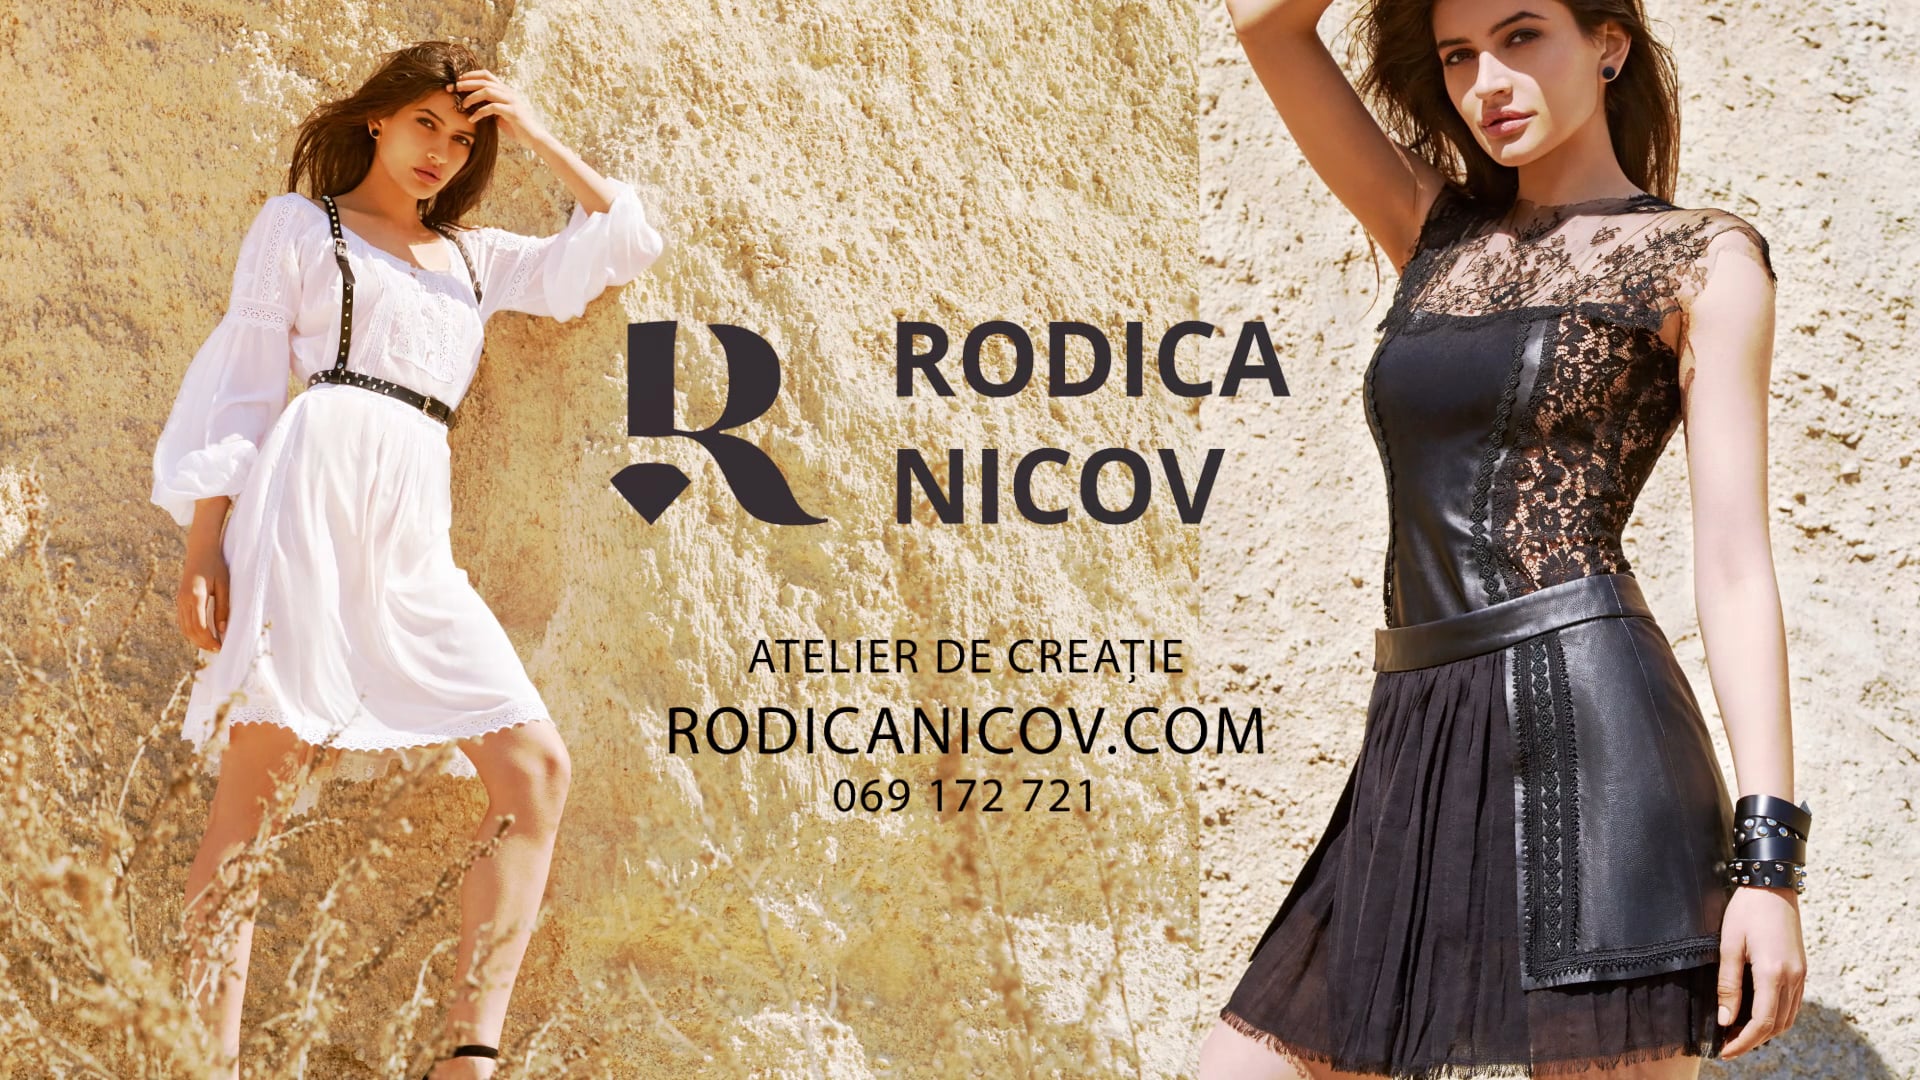 Rodica Nicov (promo for tv)